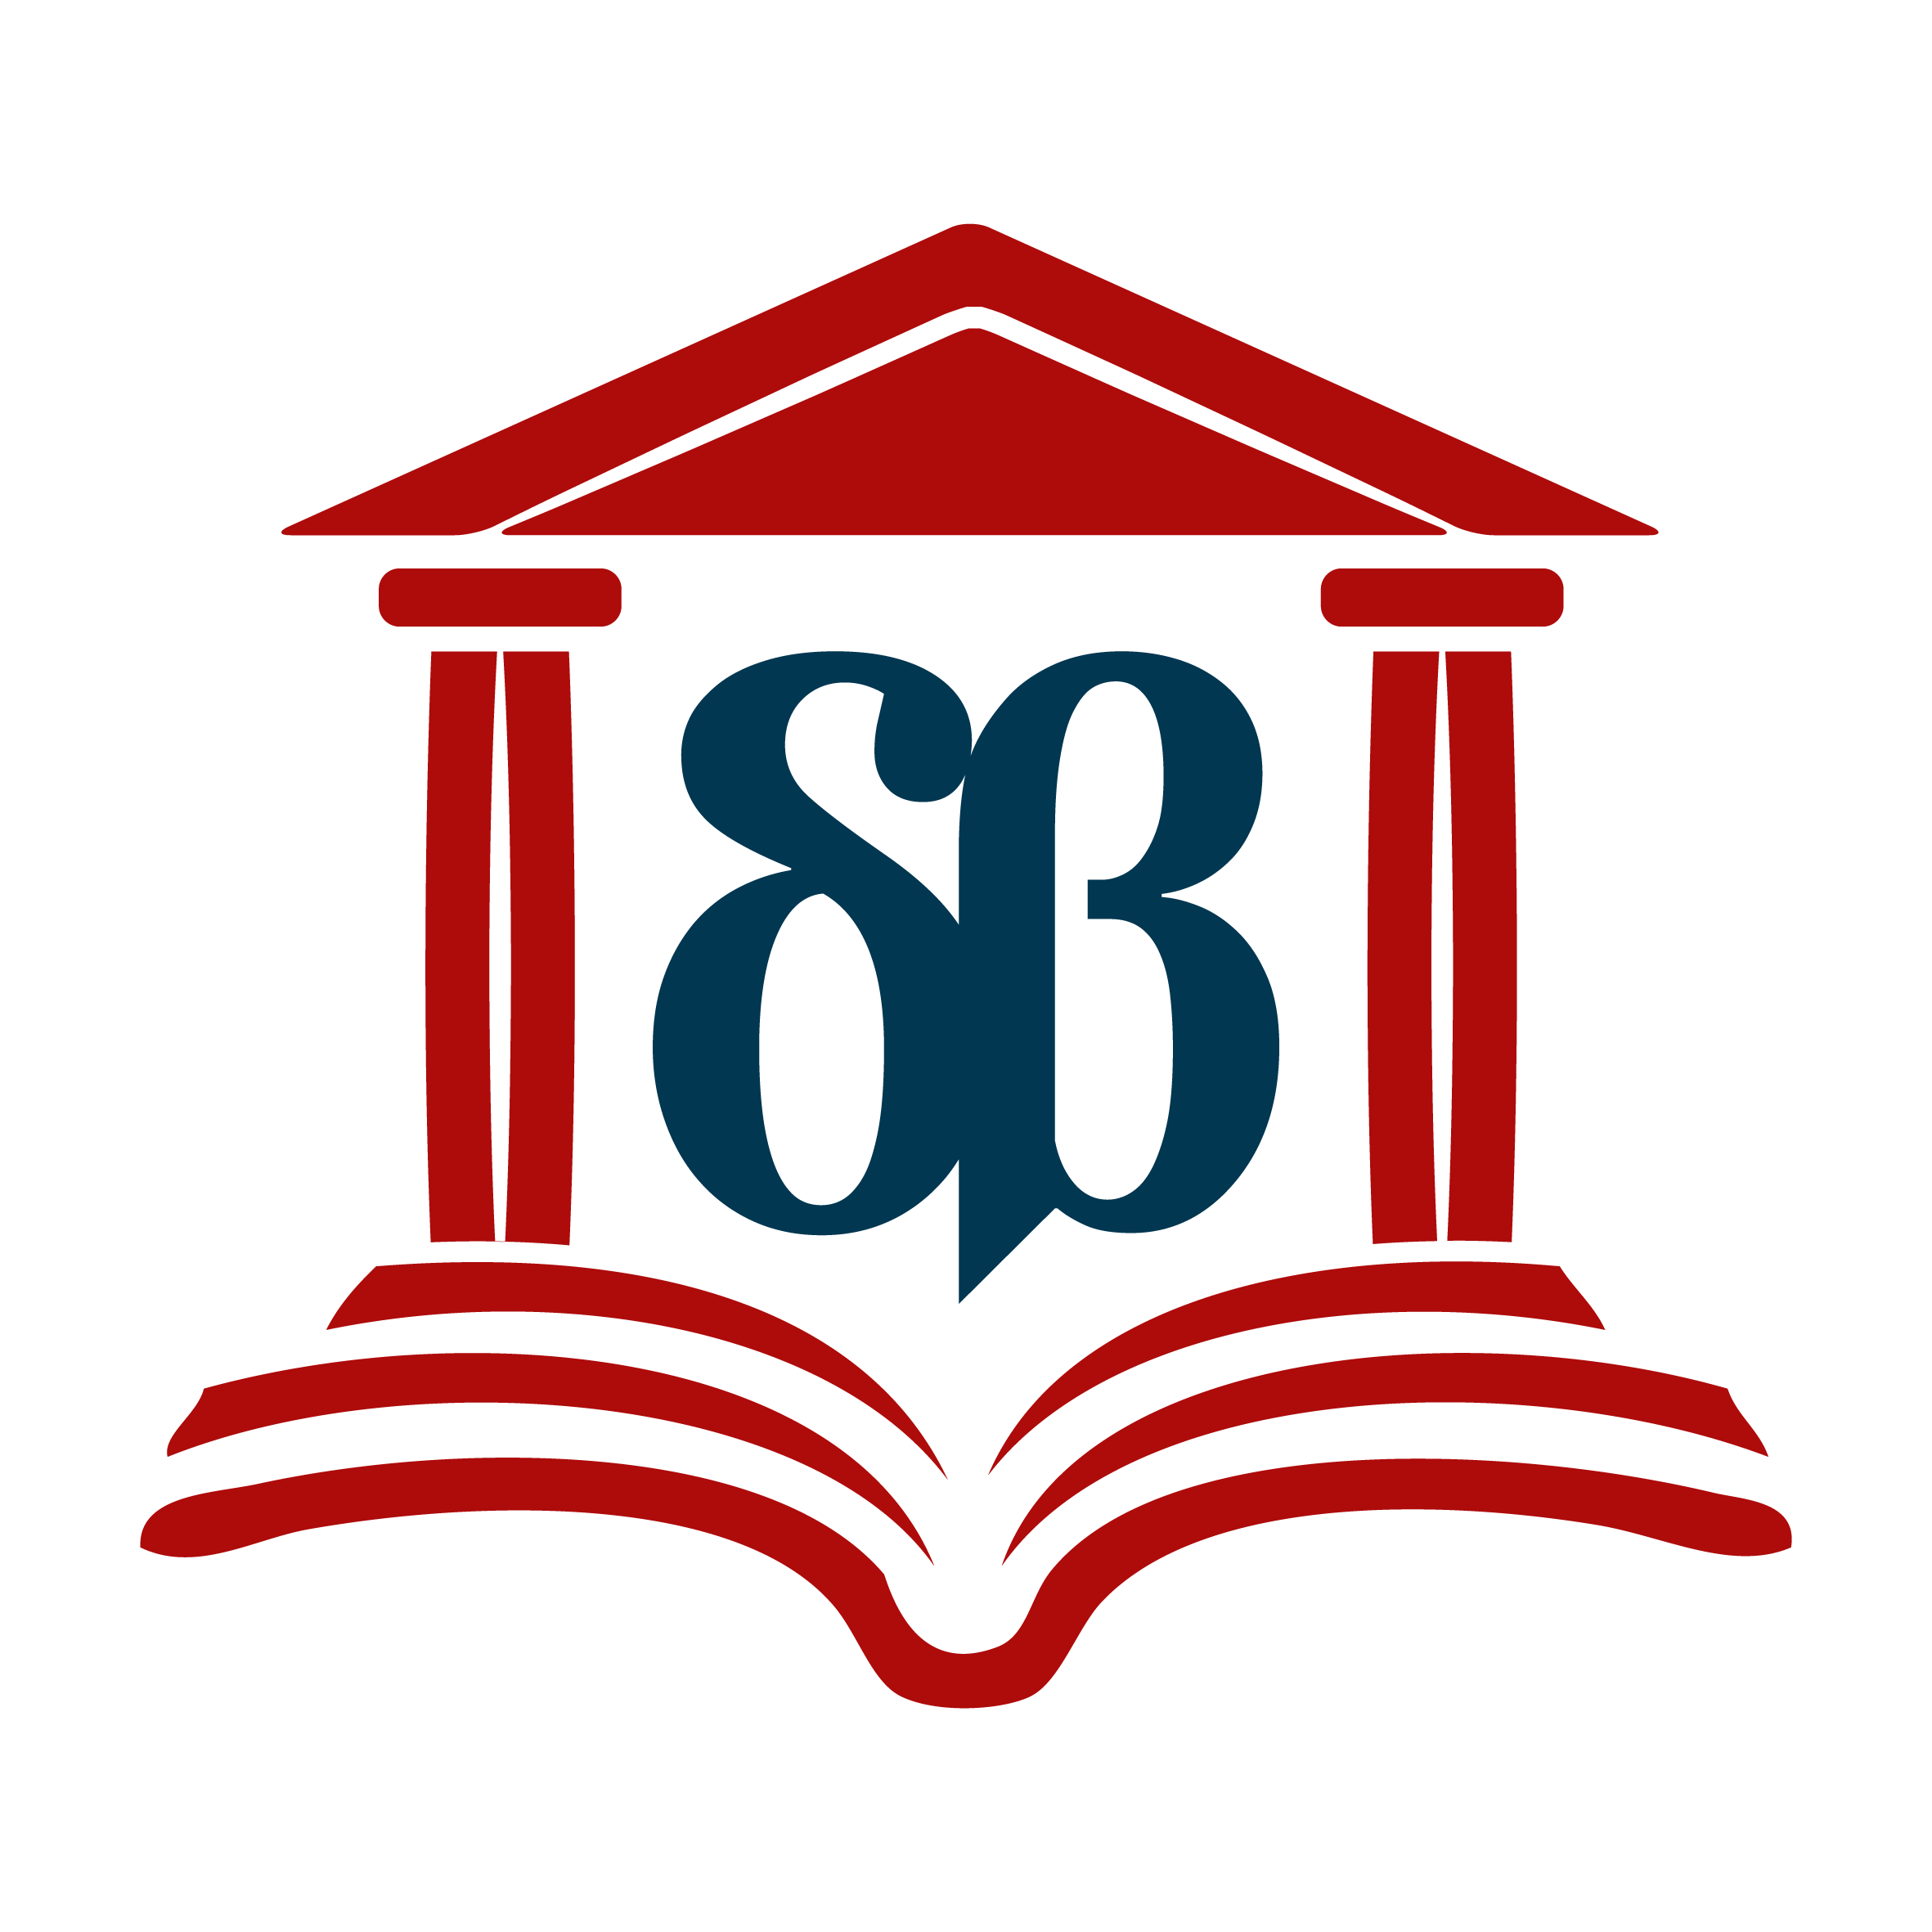 Το λογότυπο της Δημόσιας Κεντρικής Βιβλιοθήκης Σερρών